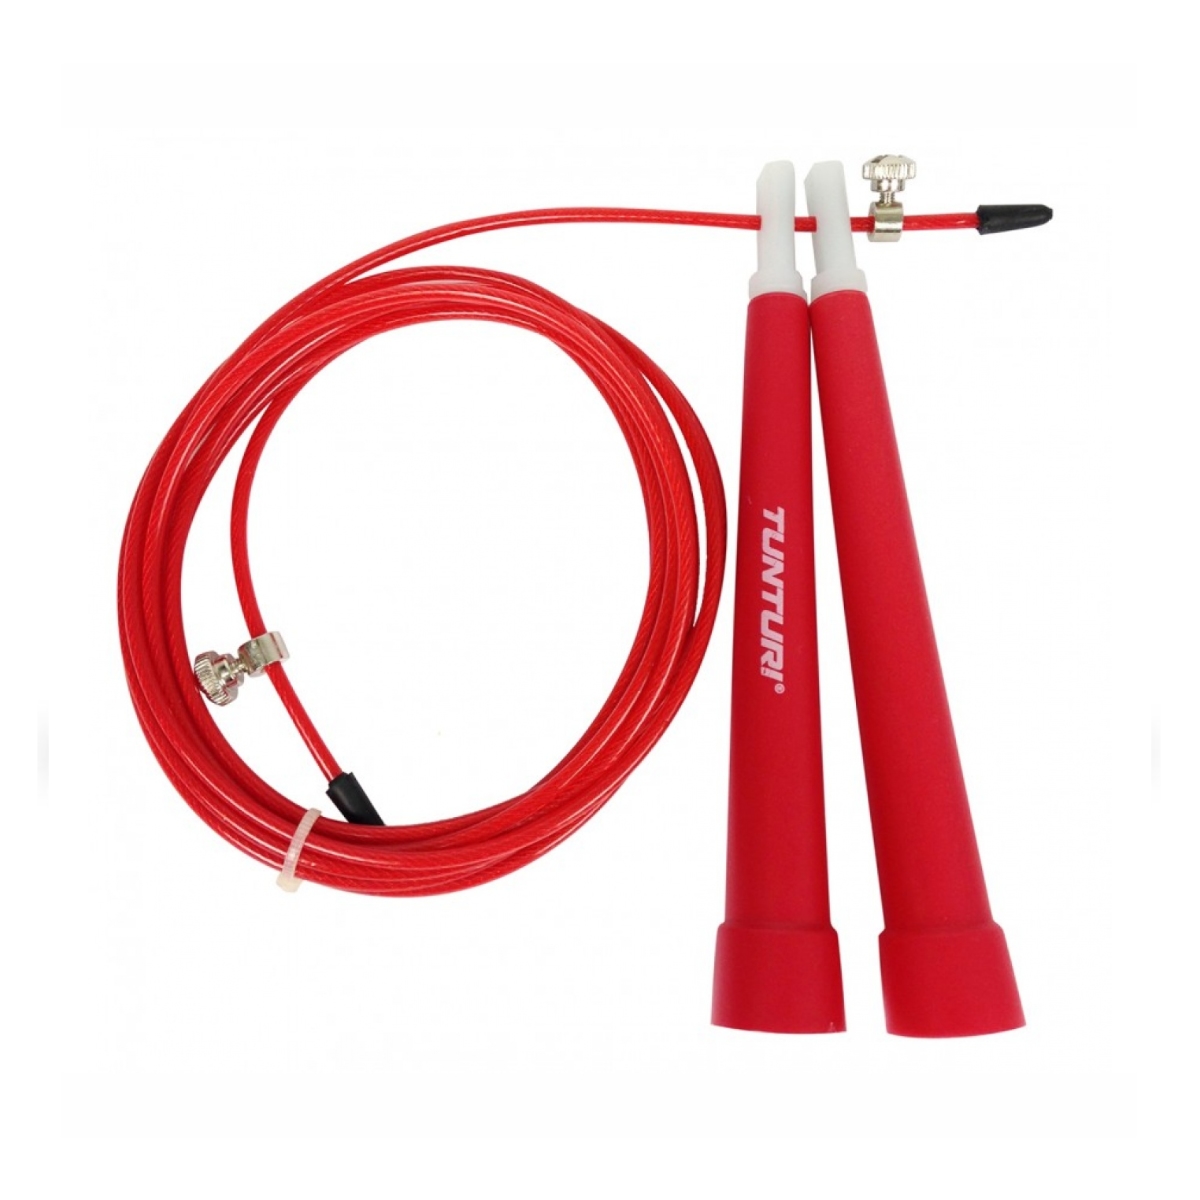 Brug Tunturi Wire Jump rope - Rød til en forbedret oplevelse